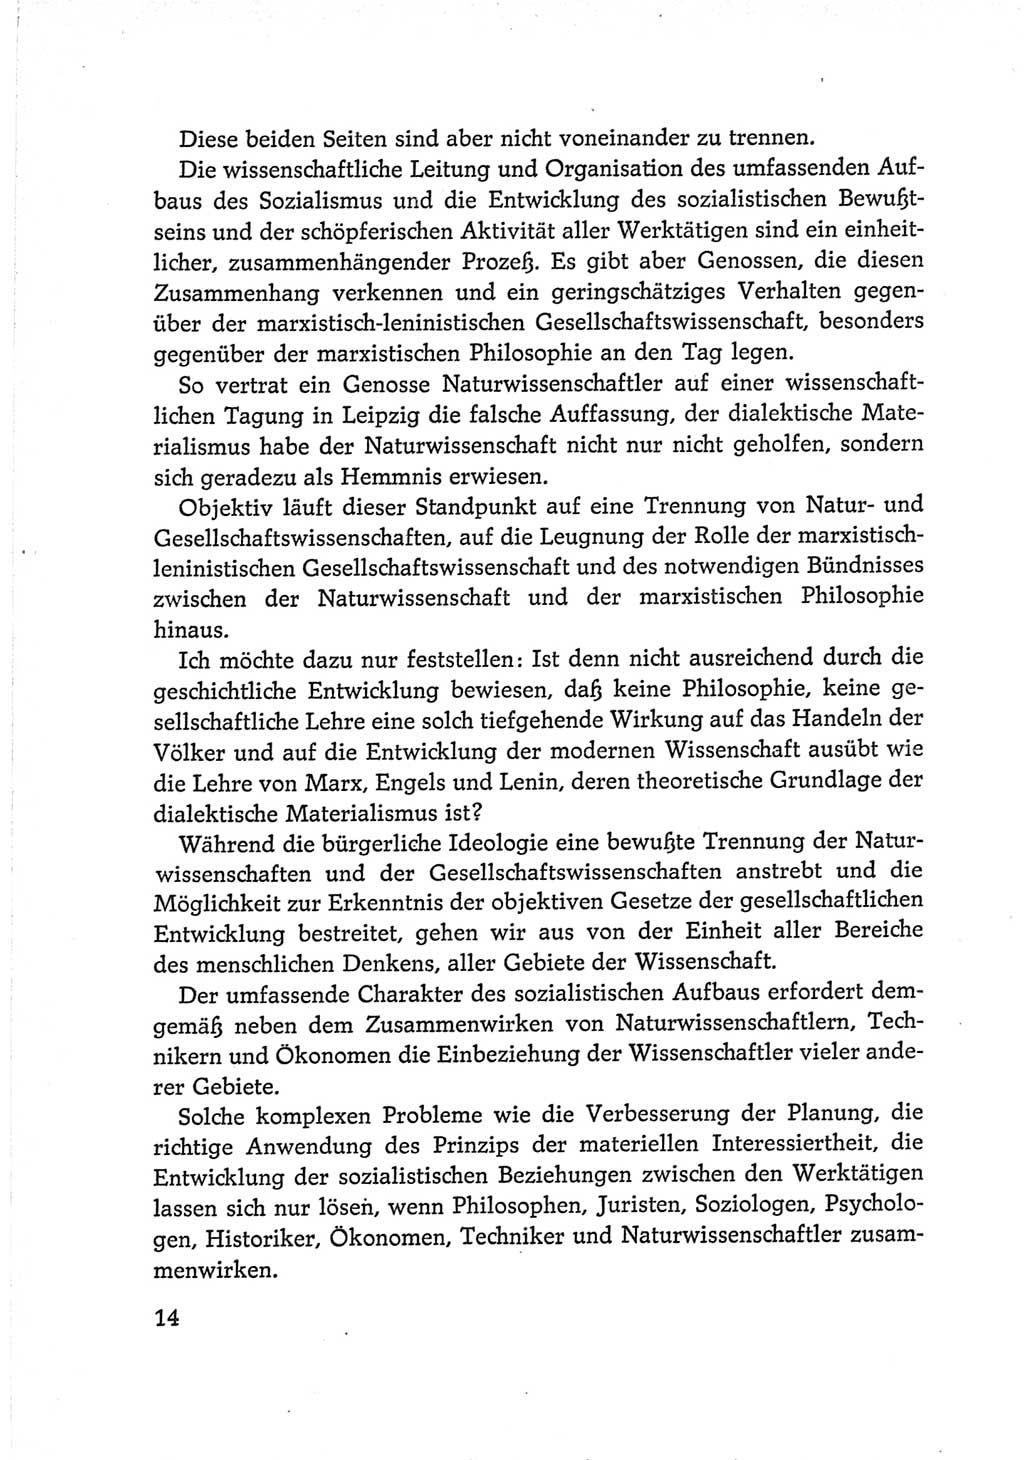 Protokoll der Verhandlungen des Ⅵ. Parteitages der Sozialistischen Einheitspartei Deutschlands (SED) [Deutsche Demokratische Republik (DDR)] 1963, Band Ⅱ, Seite 14 (Prot. Verh. Ⅵ. PT SED DDR 1963, Bd. Ⅱ, S. 14)